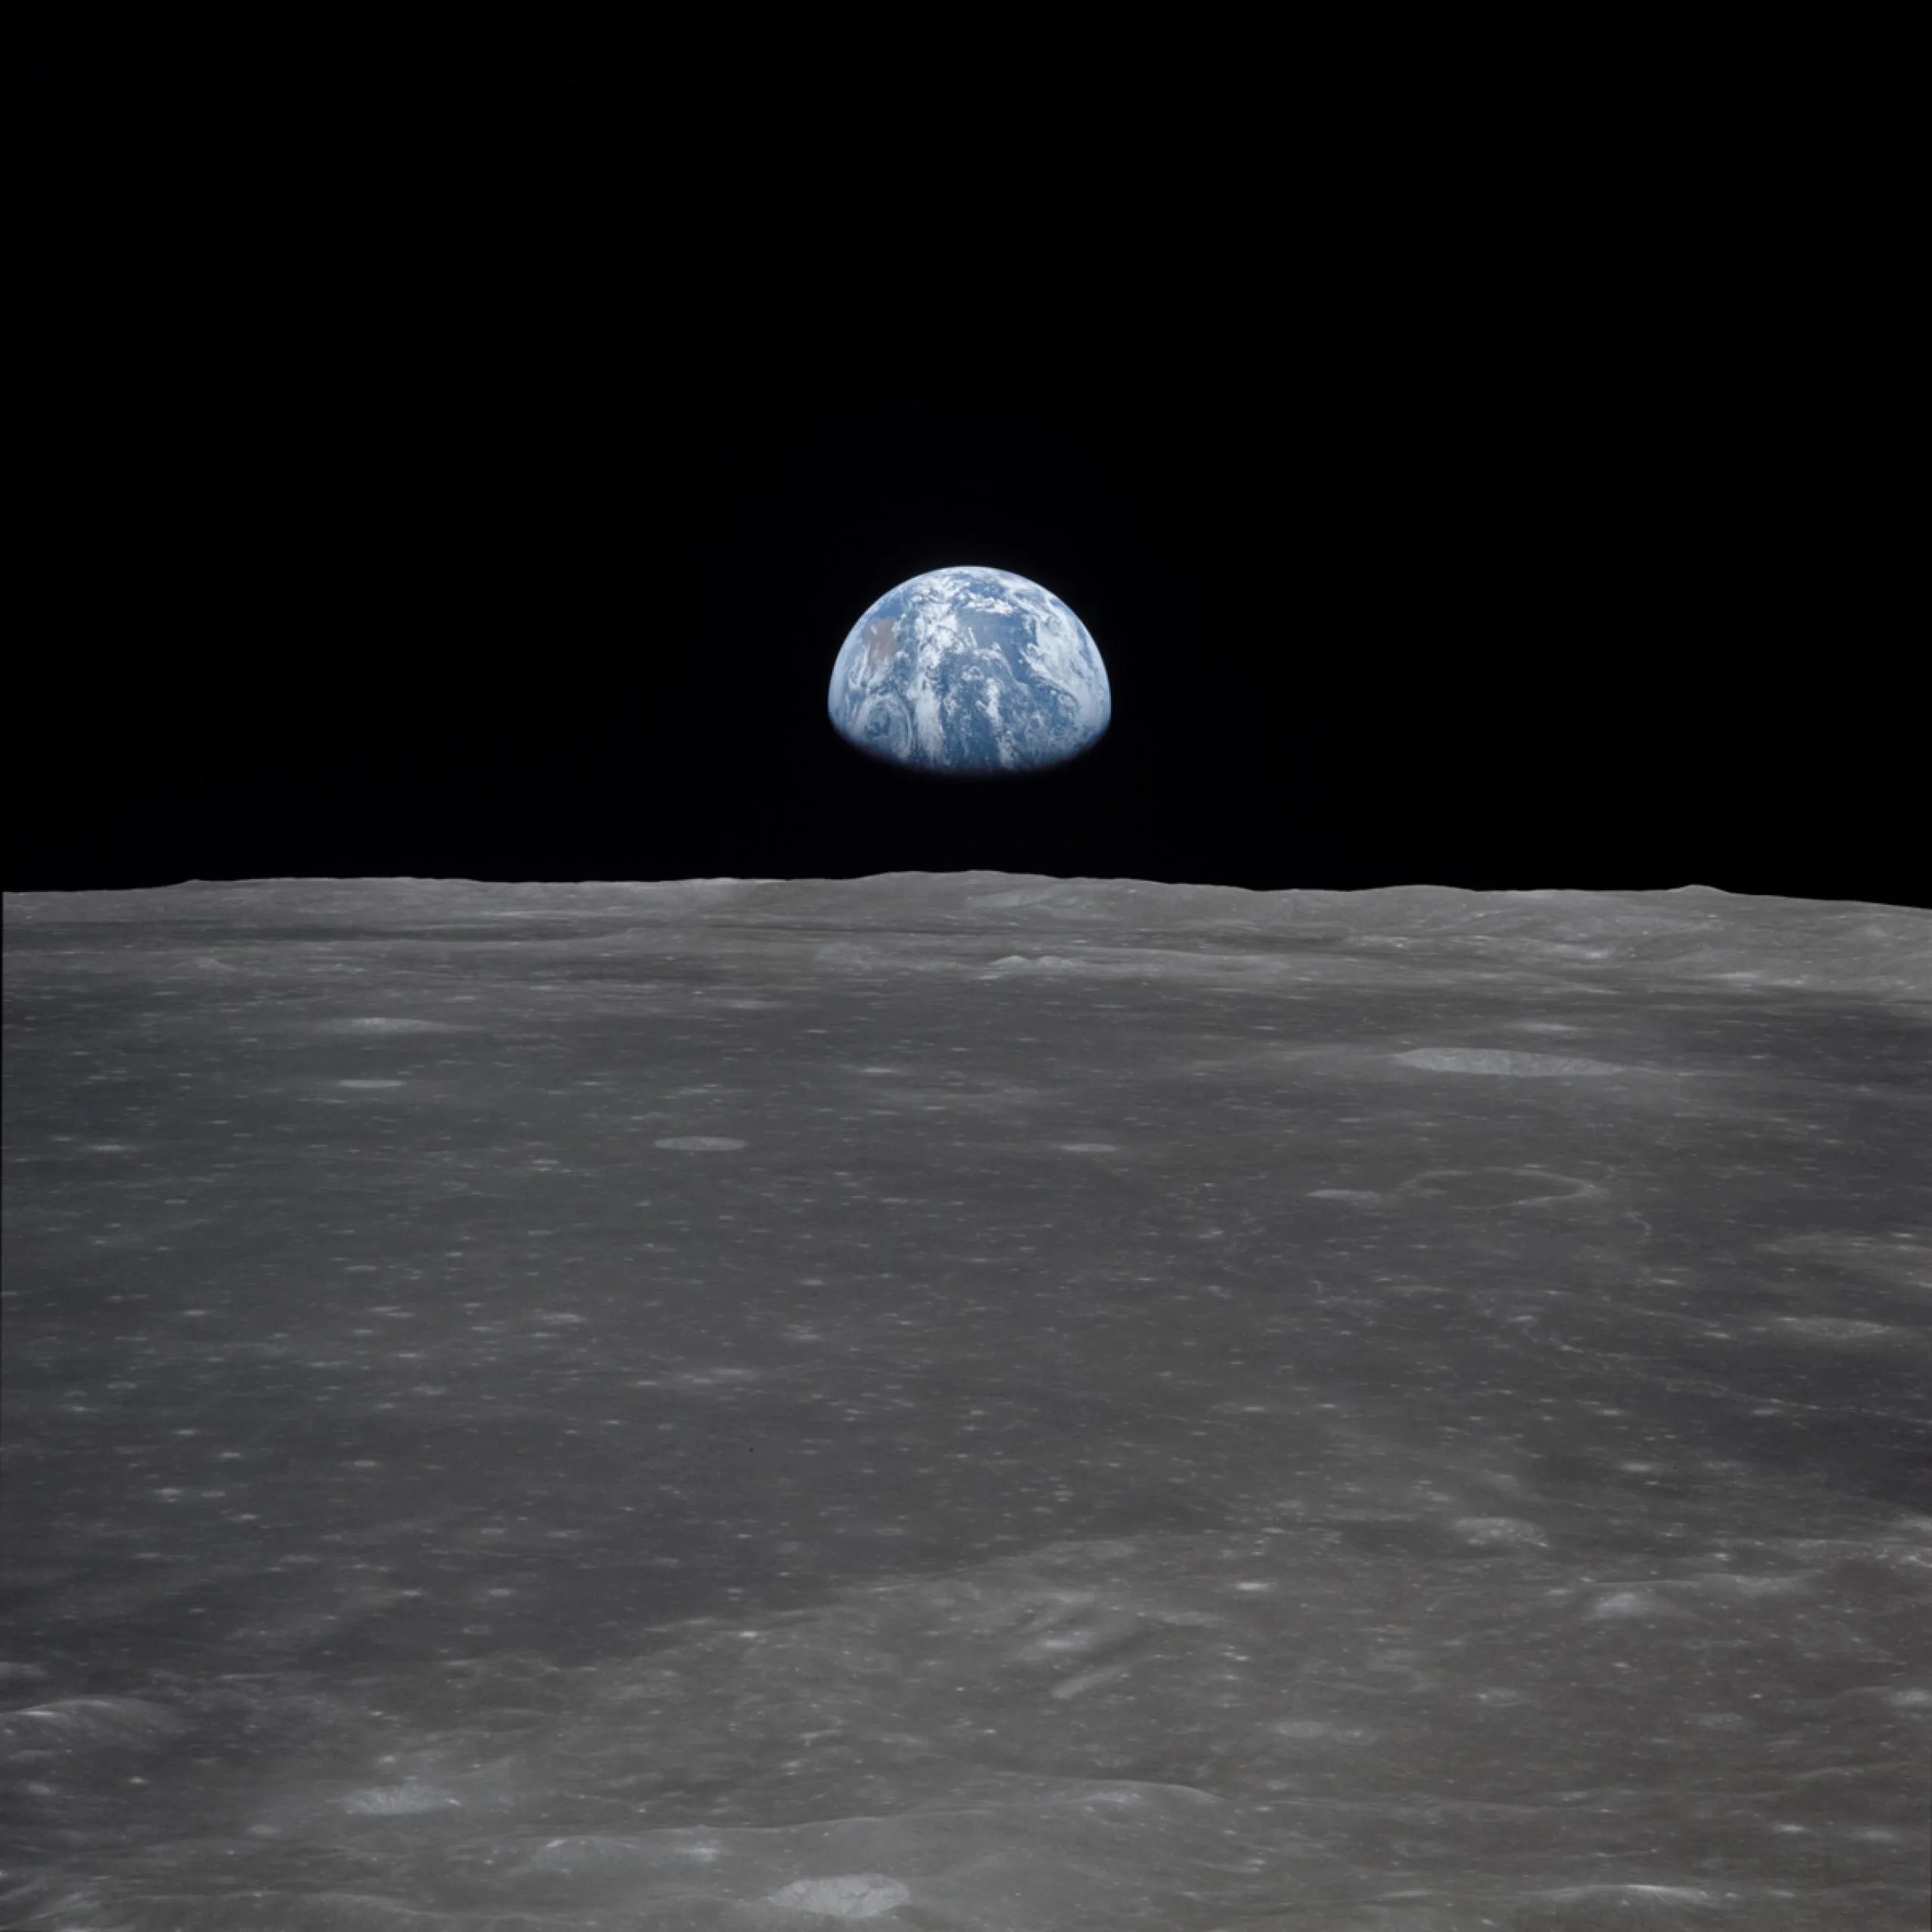 Esta es una vista captada desde la nave espacial Apolo 11, que muestra la Tierra elevándose sobre el horizonte lunar.